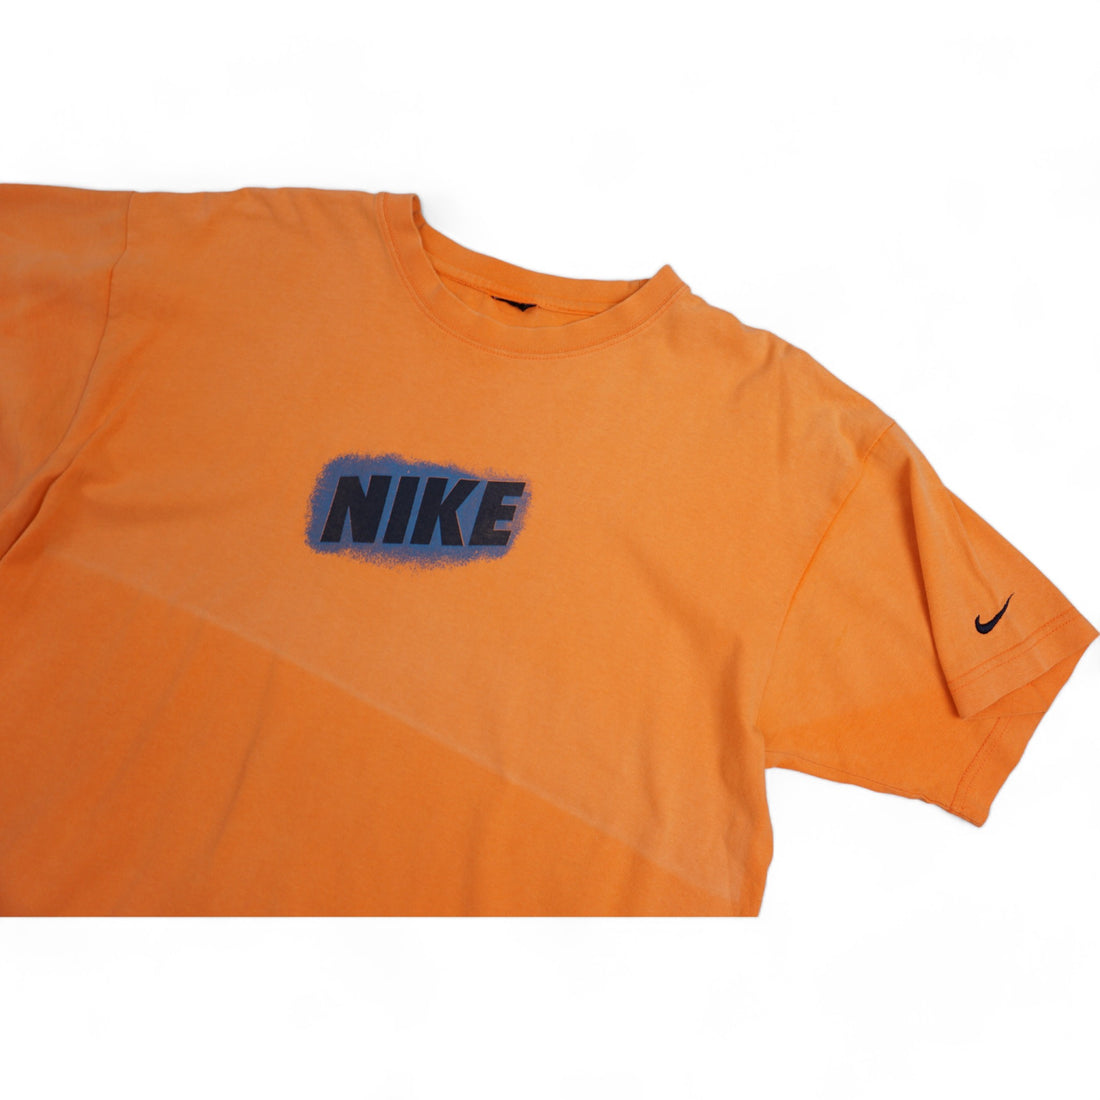 Nike Vintage Tshirt  (L)